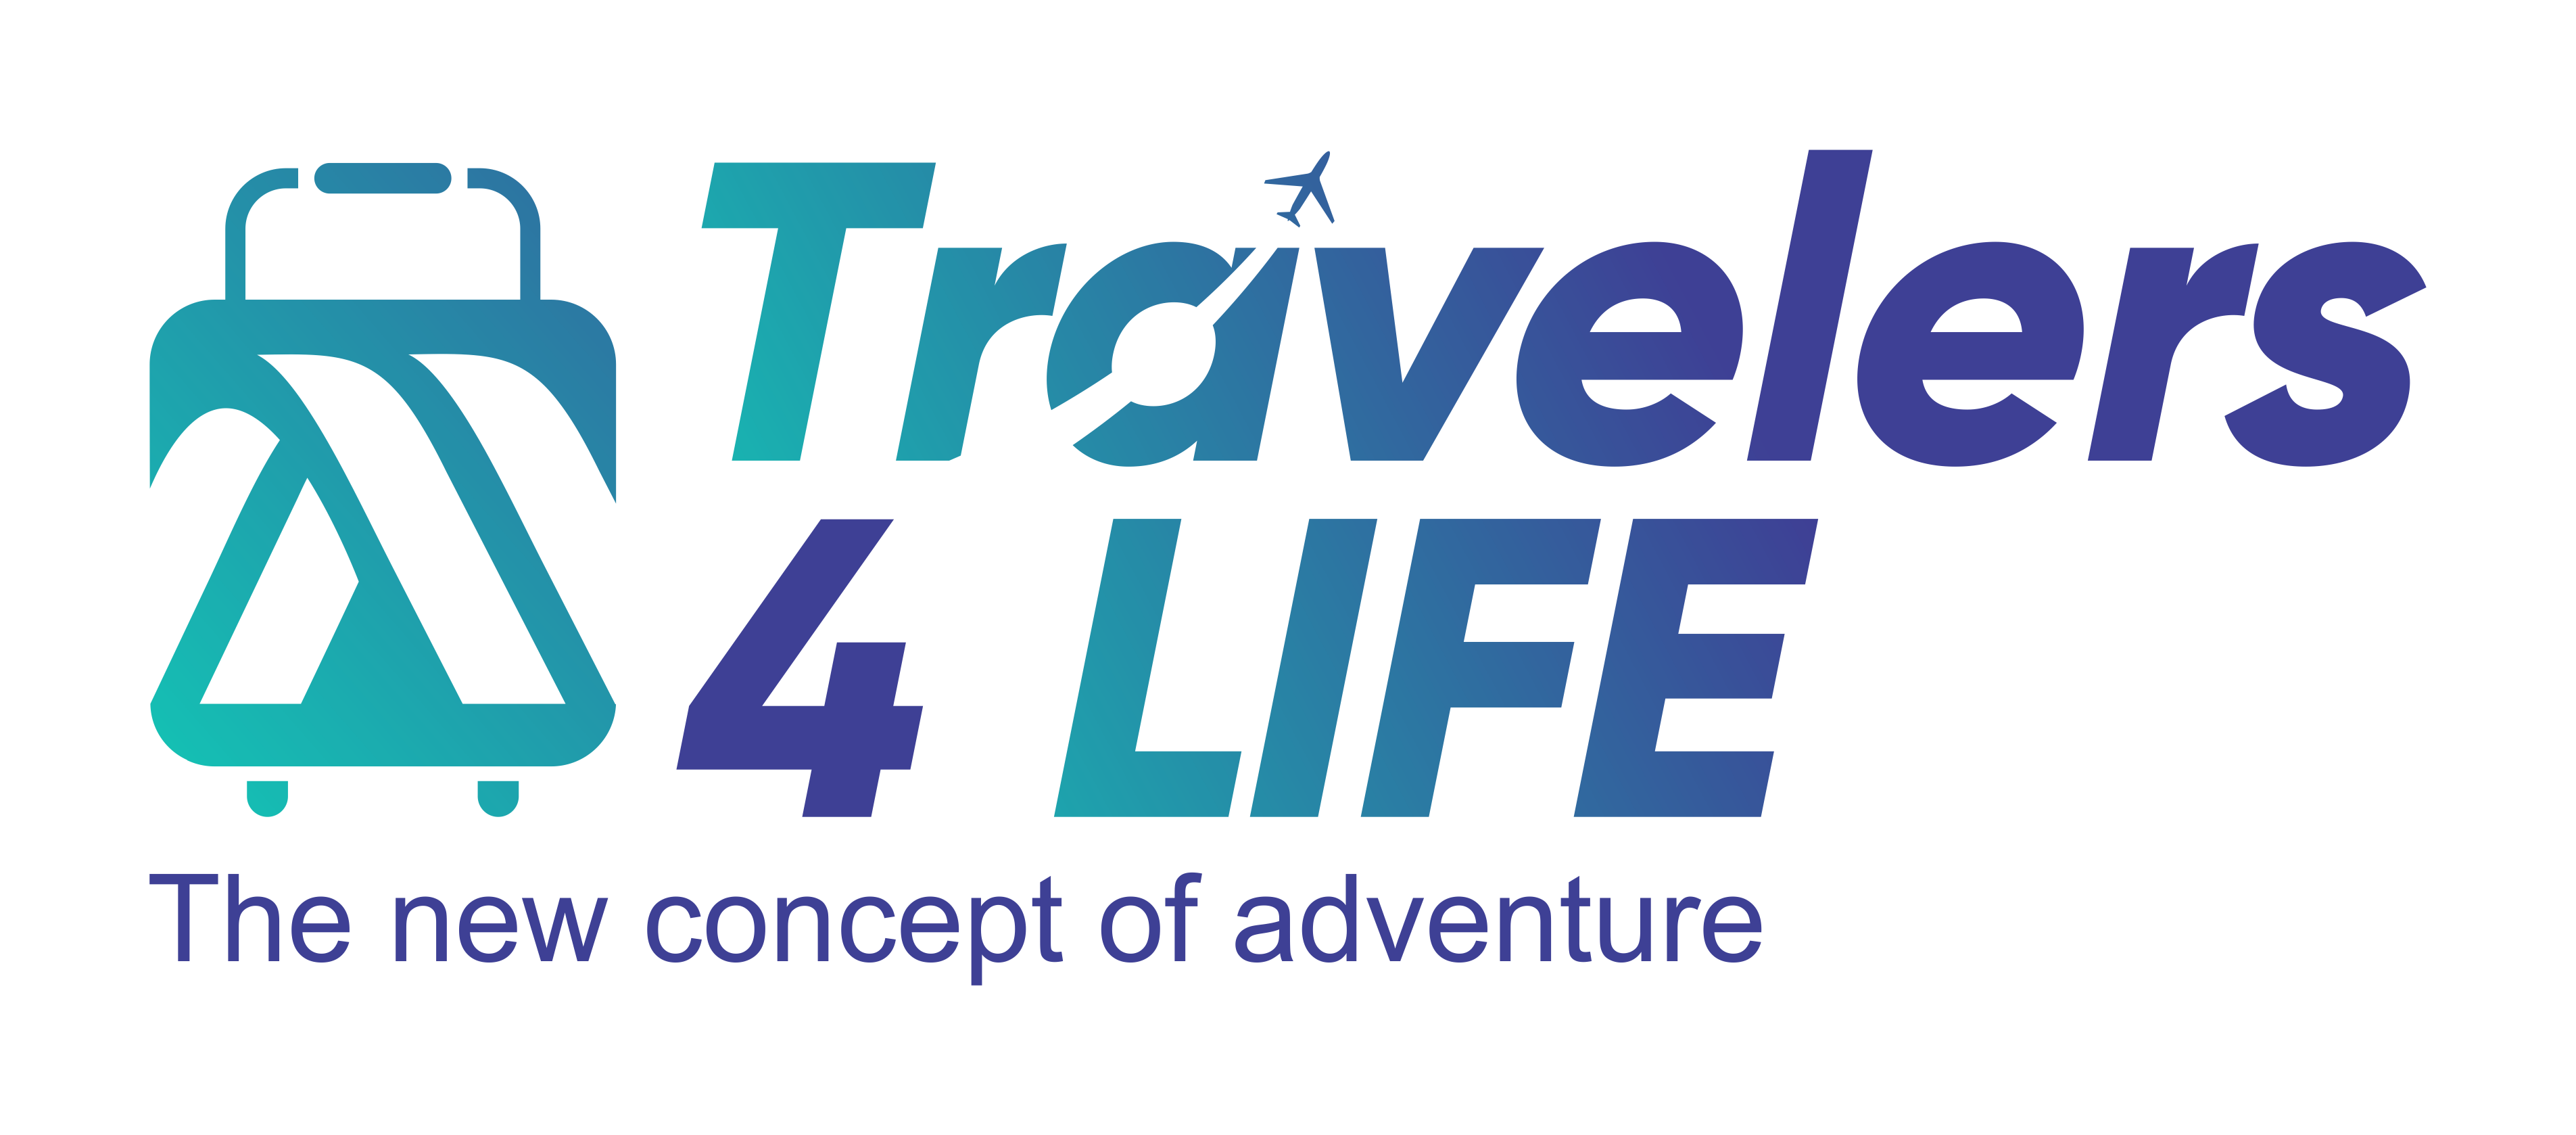 Travelers4life